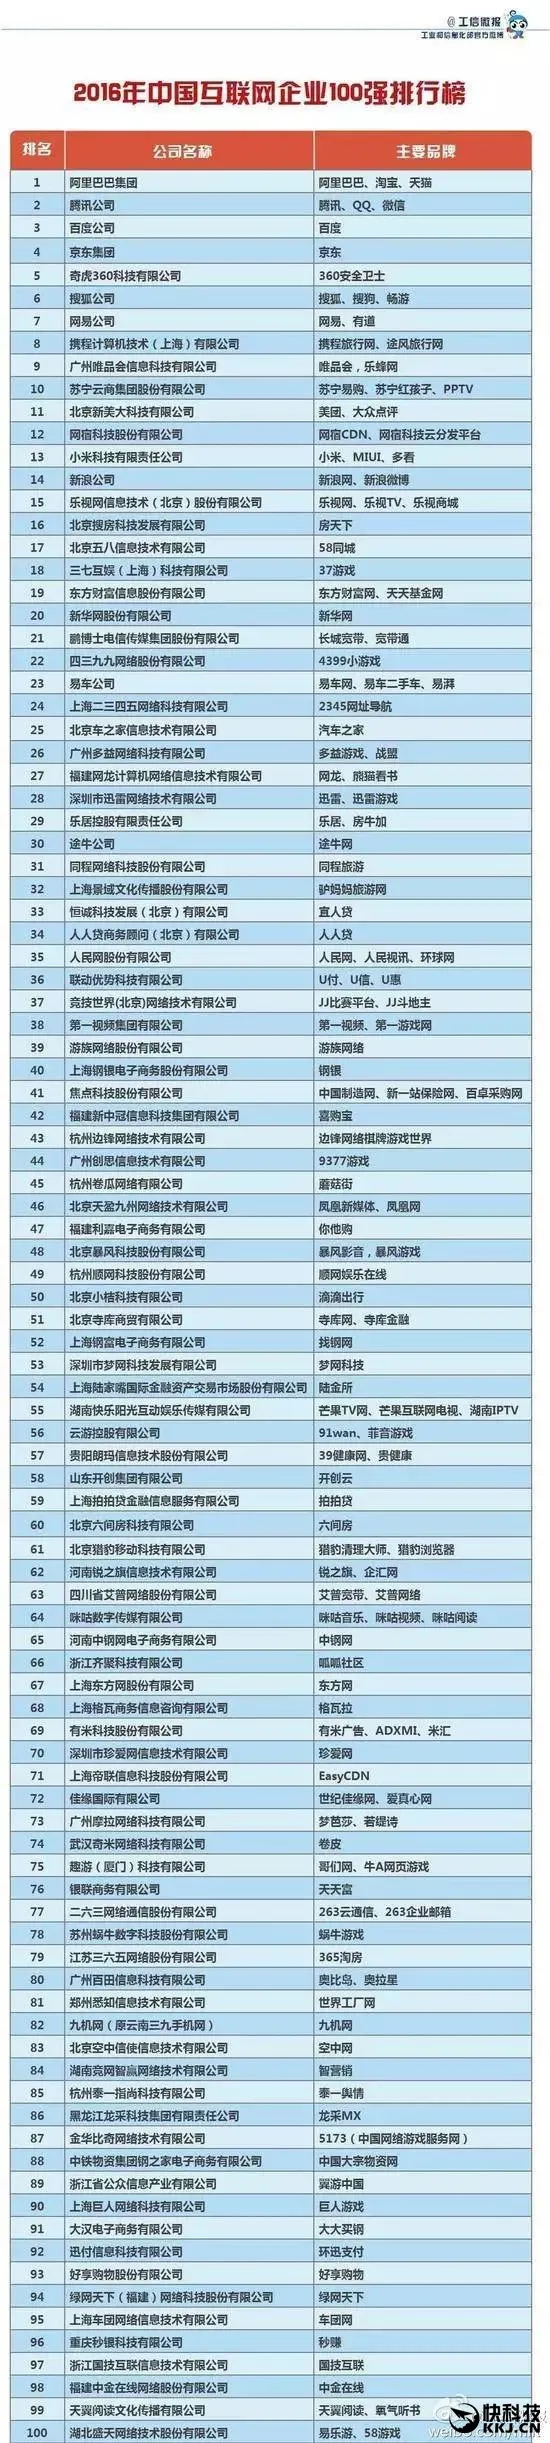 2017年中国互联网企业100强名单发布 BAT连续五年位列前3